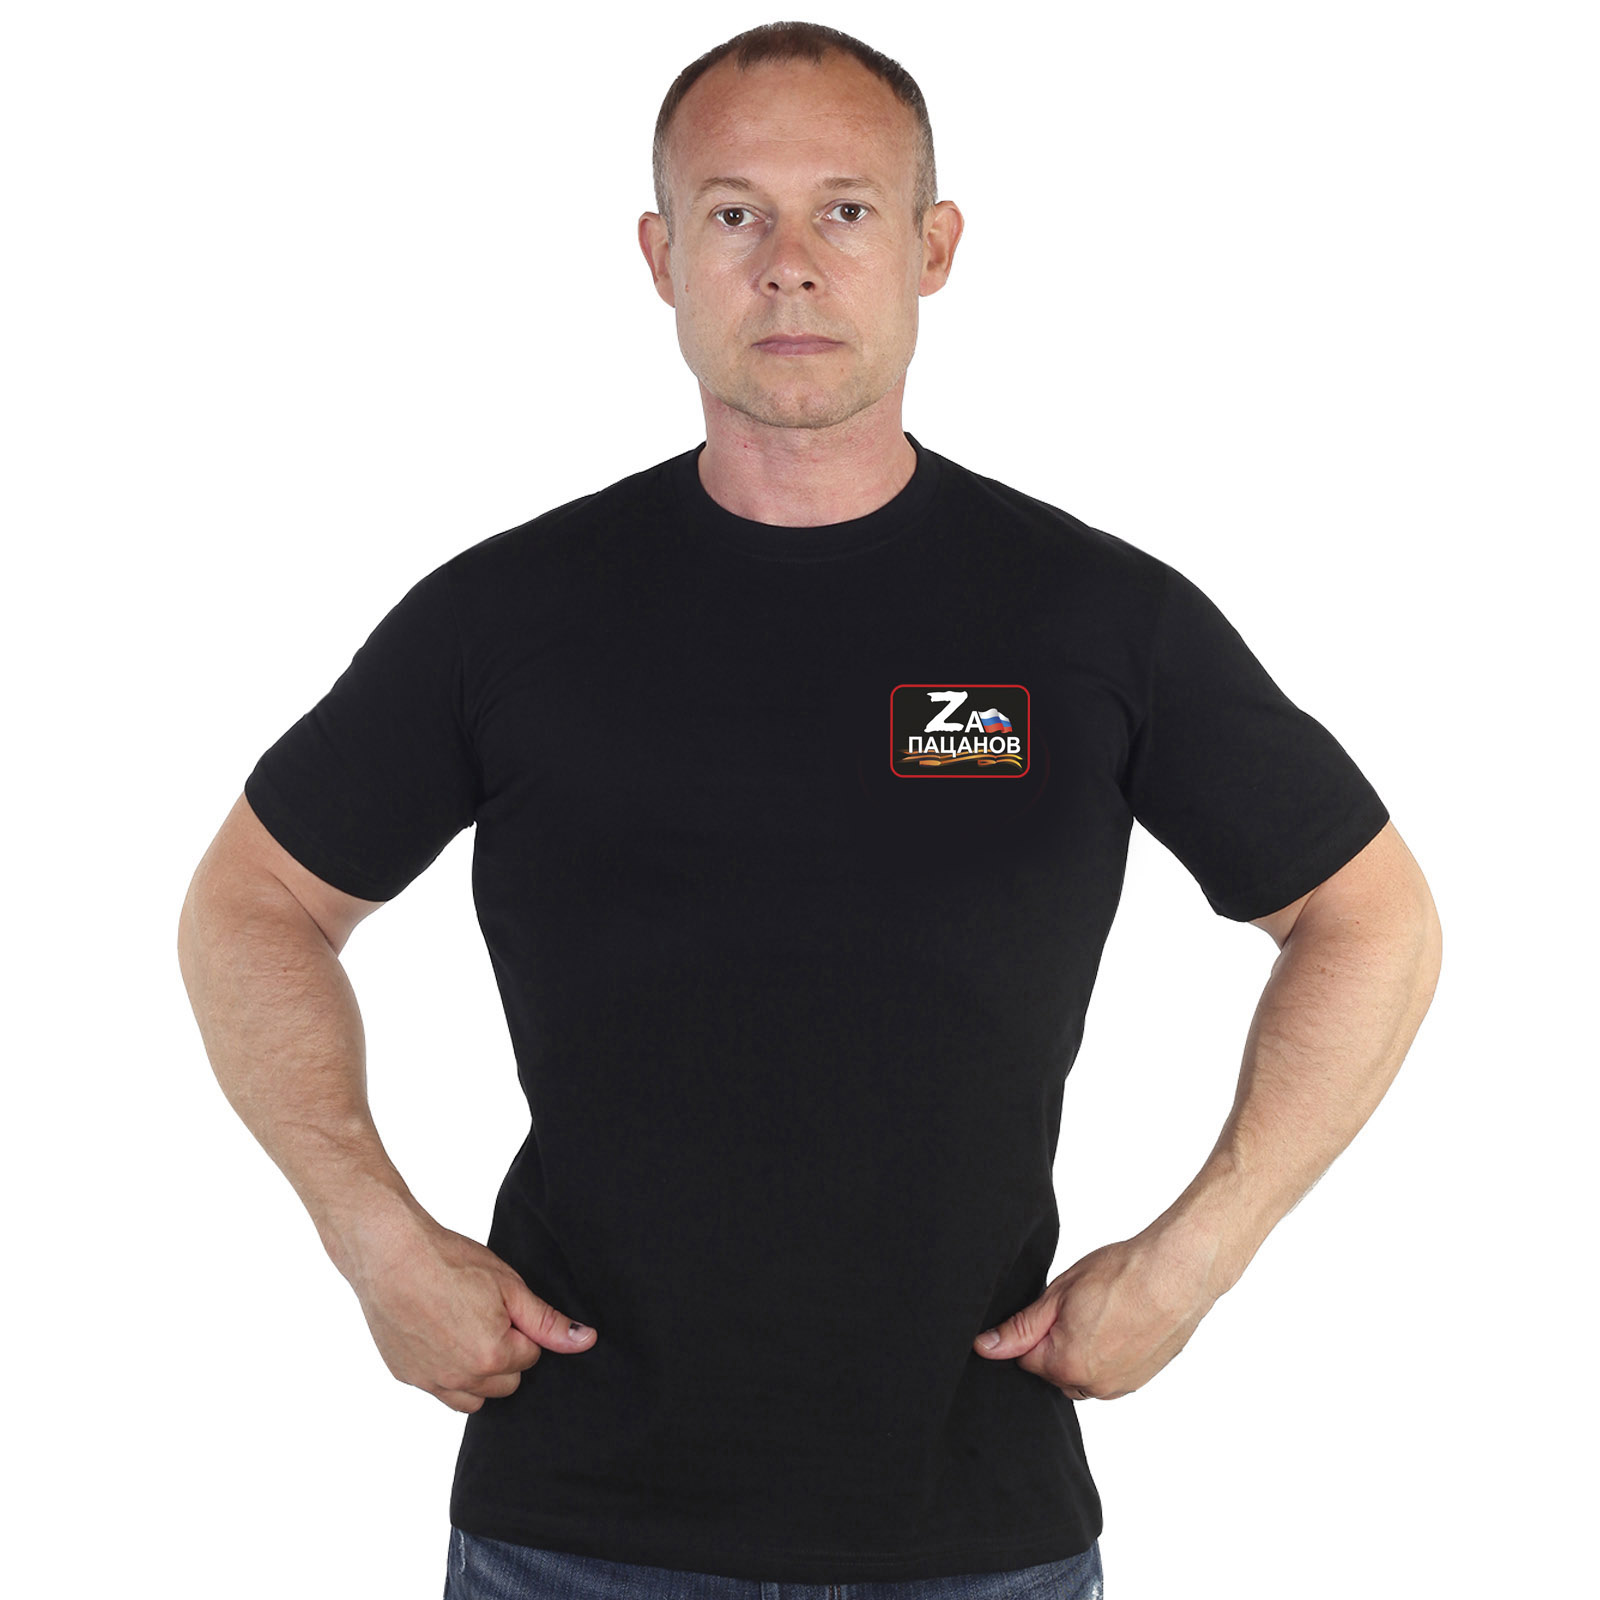 Чёрная футболка с термотрансфером "Zа пацанов"